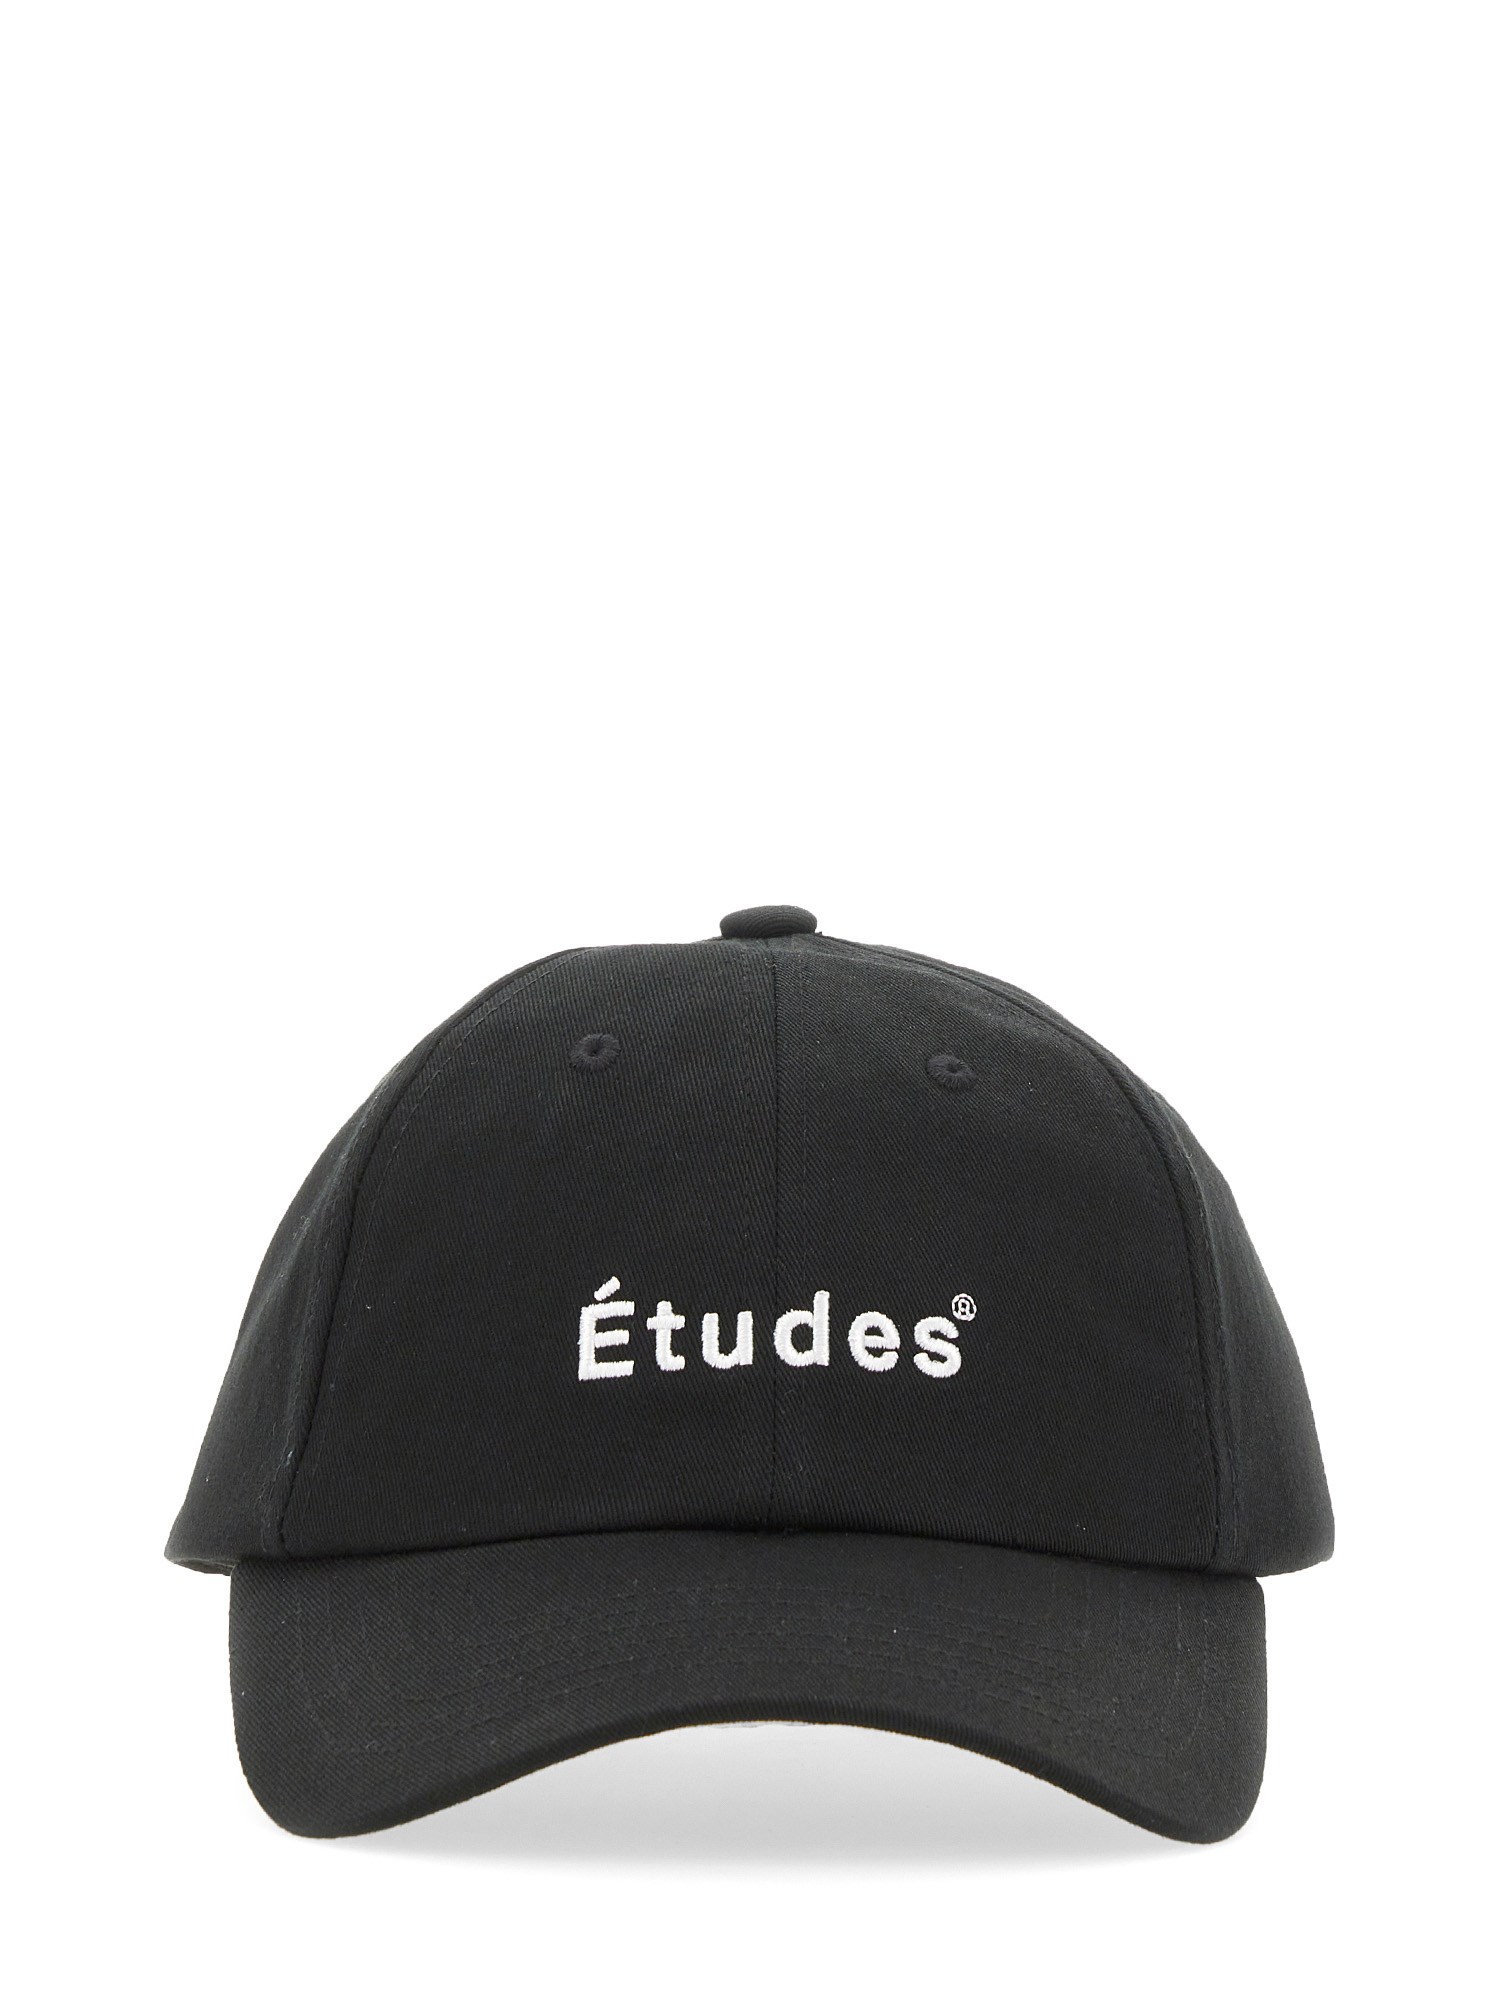 Études études baseball hat with logo embroidery